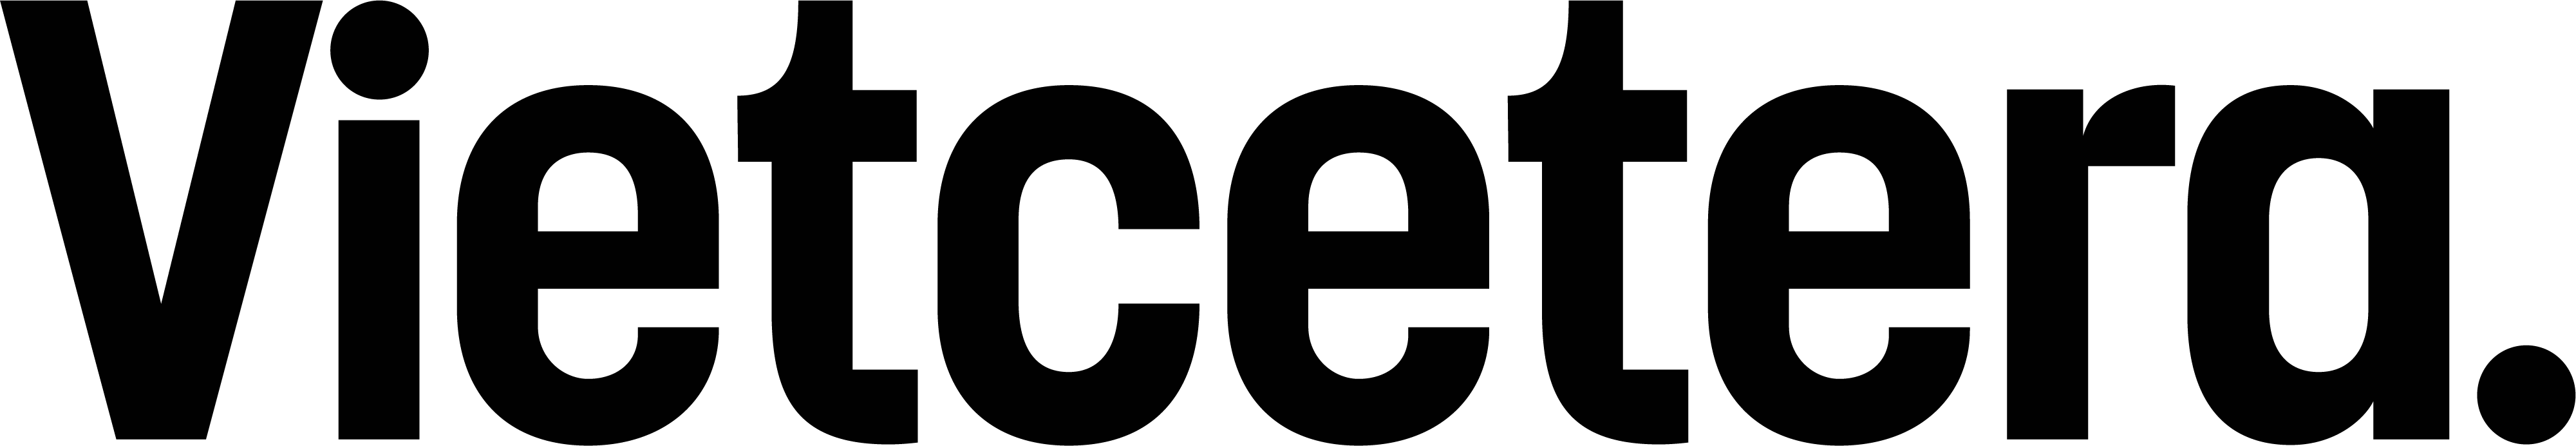 Vietcetera Logo 01